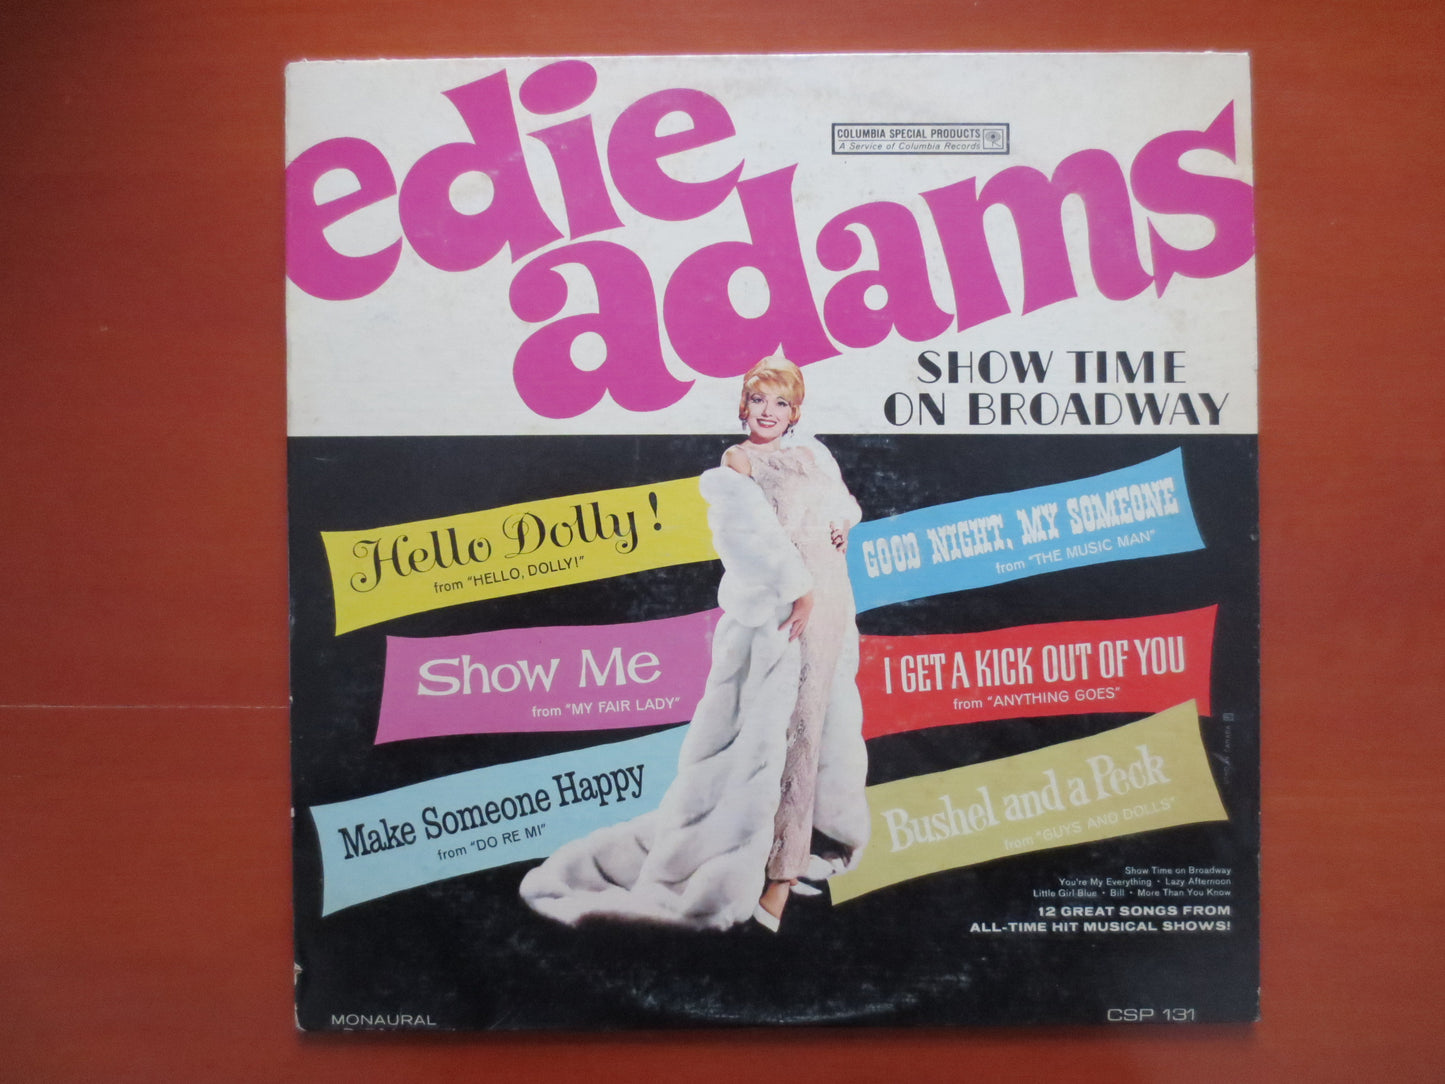 EDIE ADAMS, SHOWTIME on Broadway, Edie Adams Record, Edie Adams Album, Edie Adams Vinyl, Edie Adams Lp, Vinyl, 1964 Records